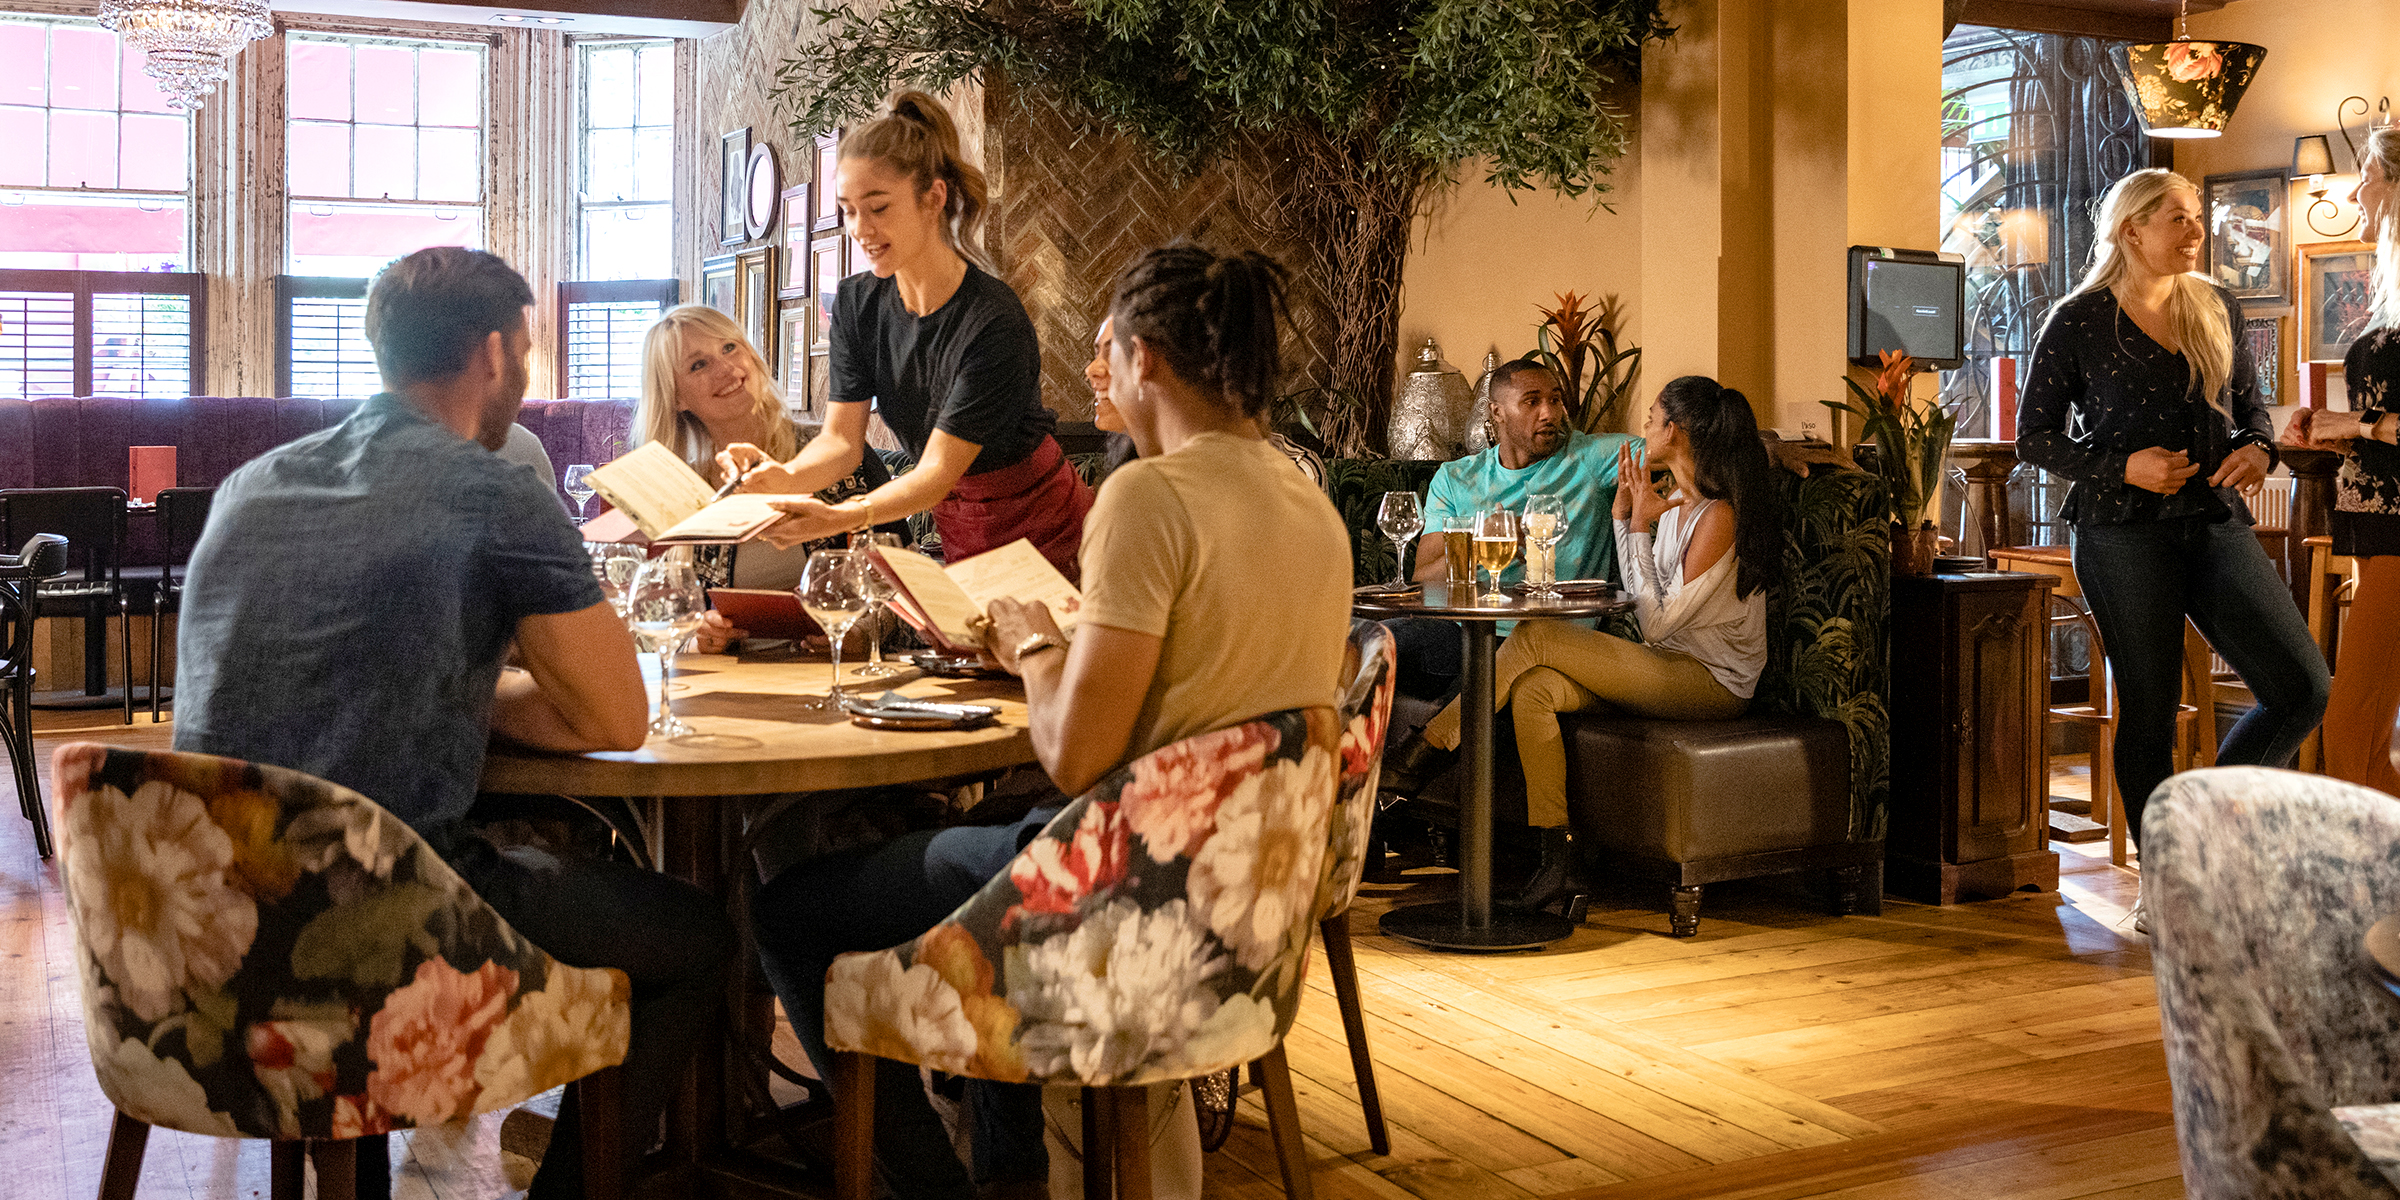 Des personnes dans un restaurant | Source : Shutterstock